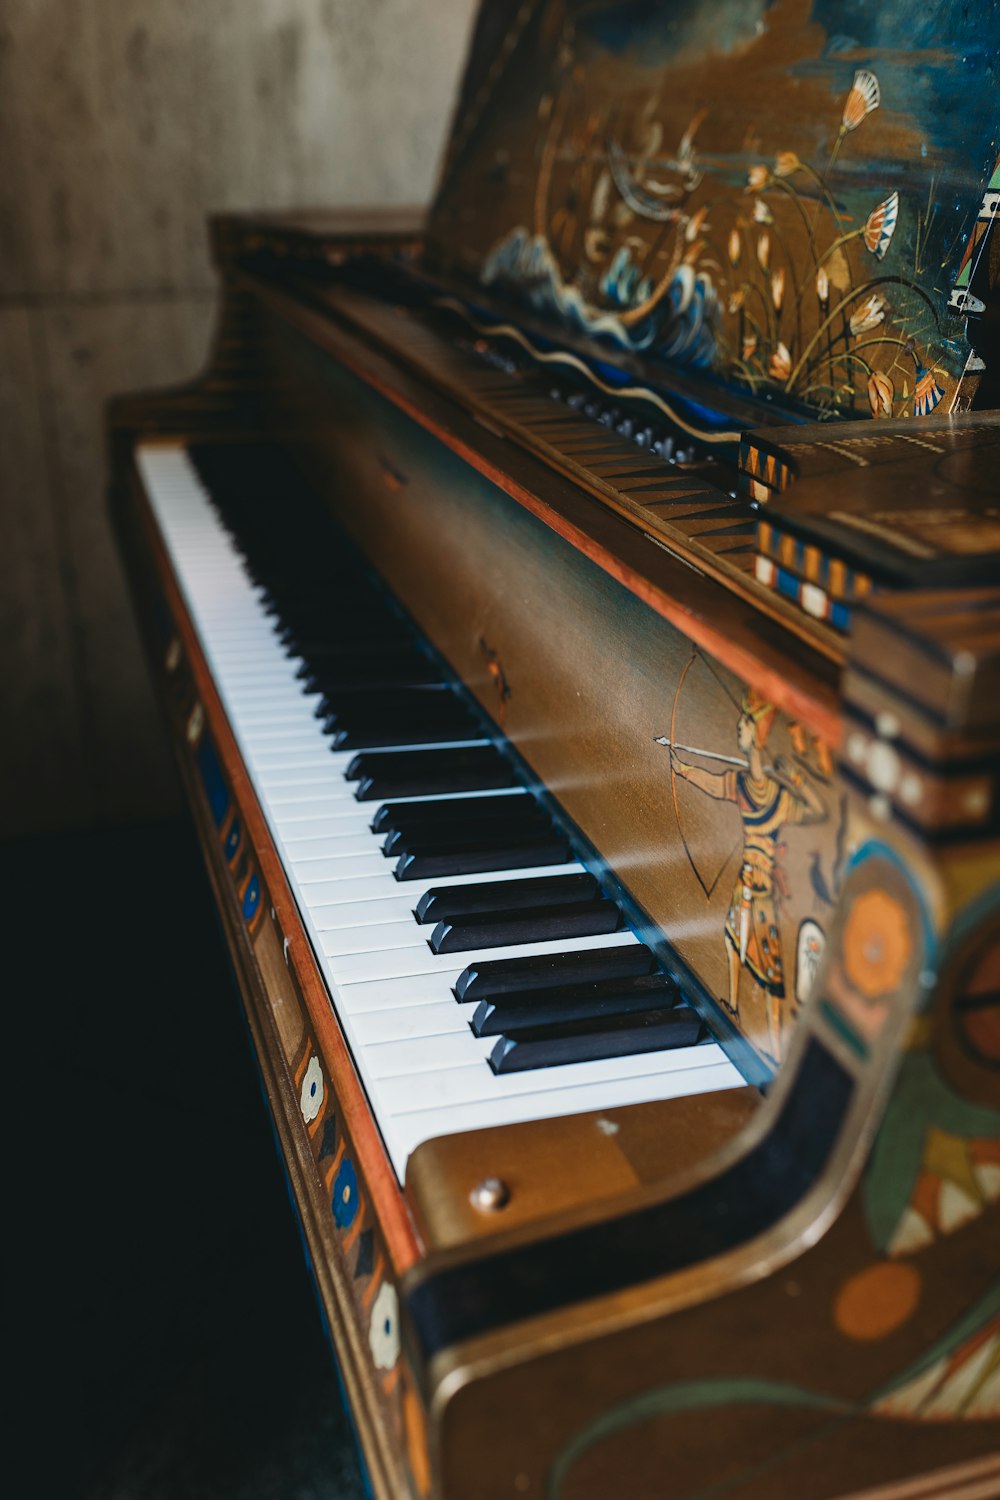 Piano Antique Photos | Télécharger des images gratuites sur Unsplash